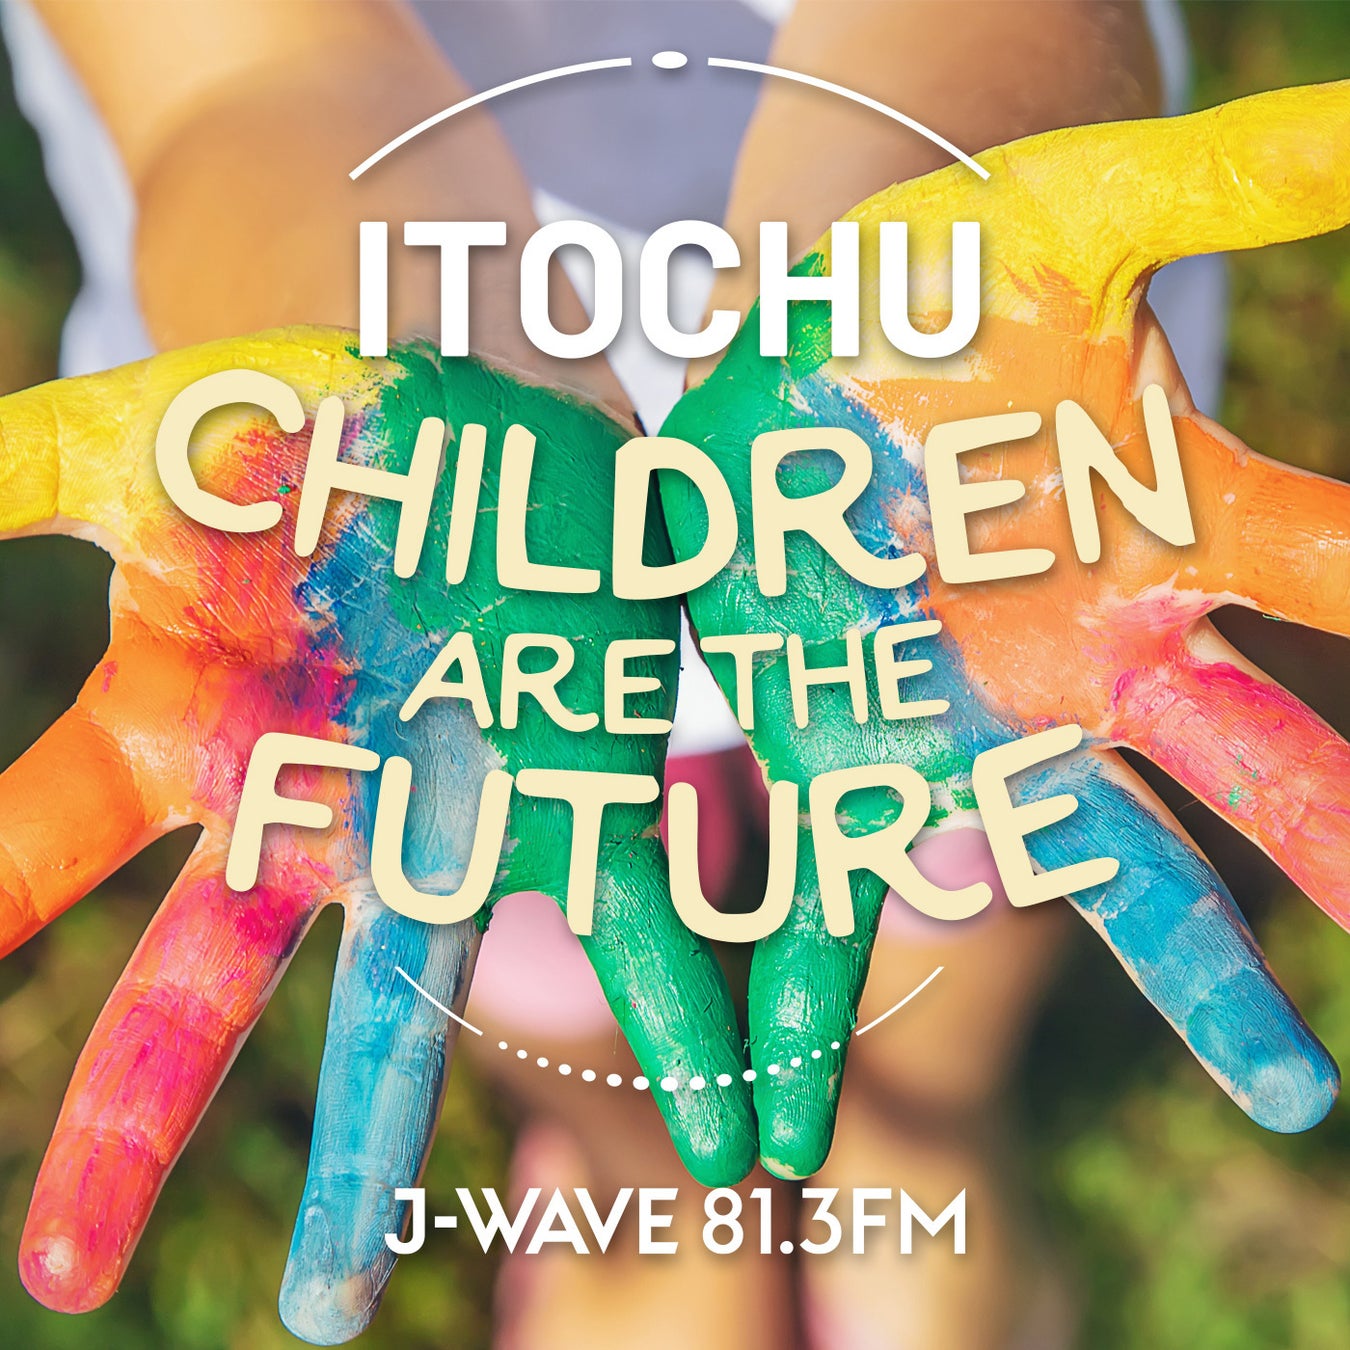 東京・イギリス・滋賀、各地の小学生がSDGsを通して繋がり・学び合う体験を。『J-WAVE SPECIAL ITOCHU CHILDREN ARE THE FUTURE』のサブ画像1